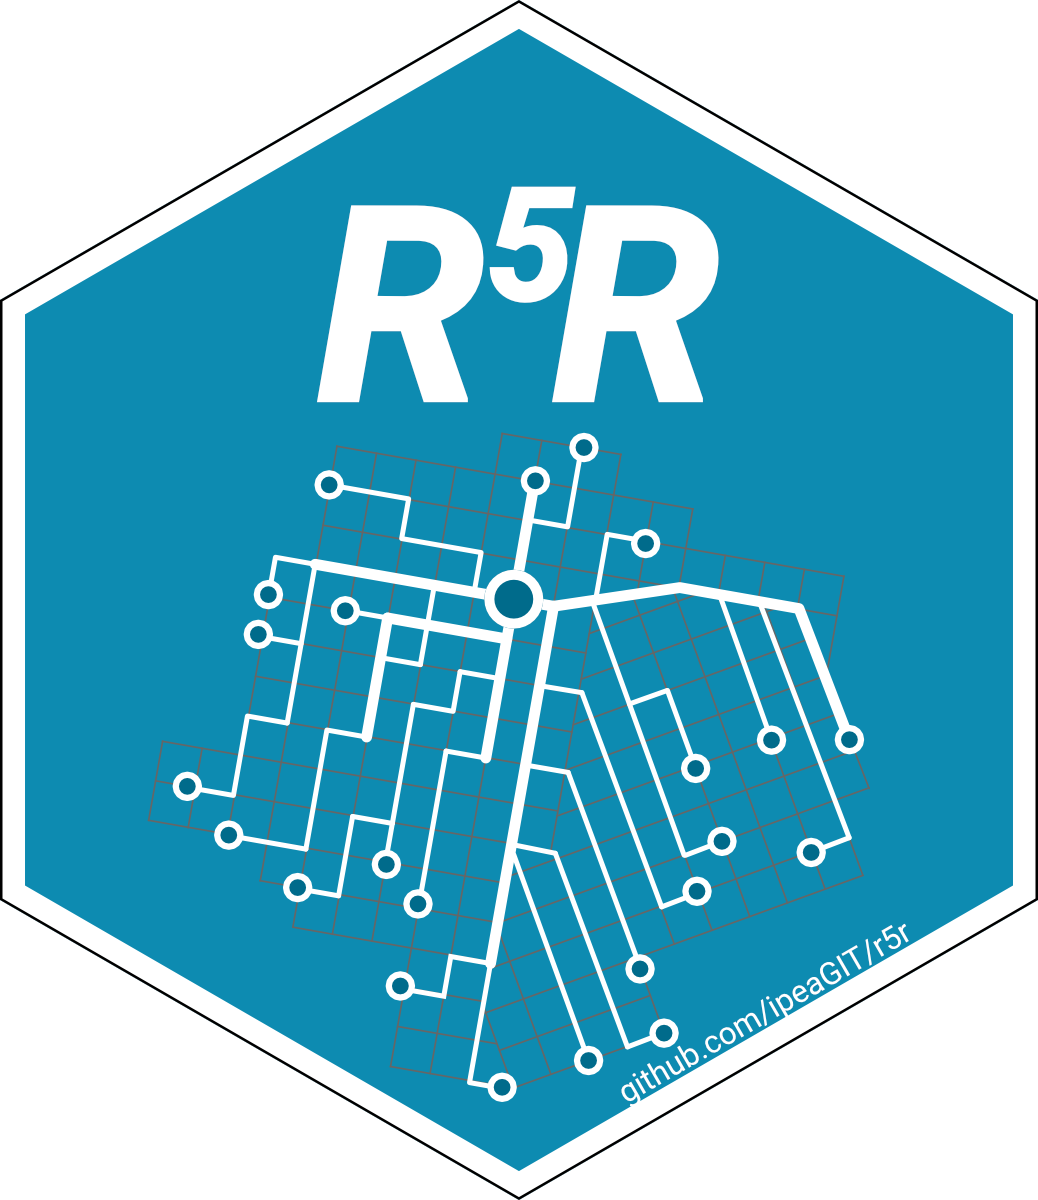 r5r logo